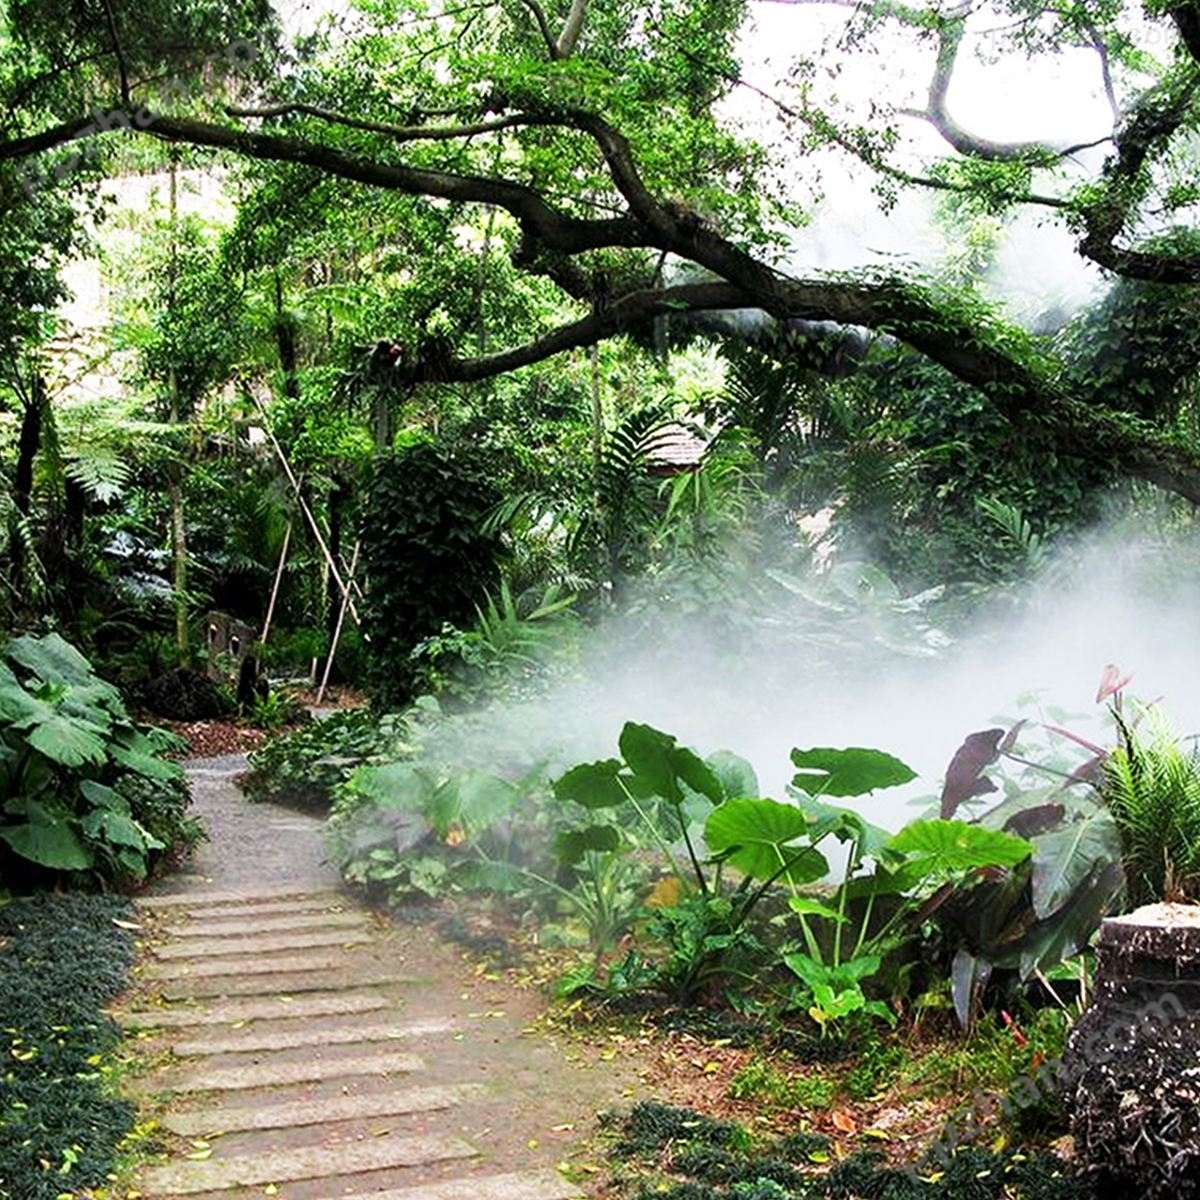 园林人造雾设备 雾森景观系统